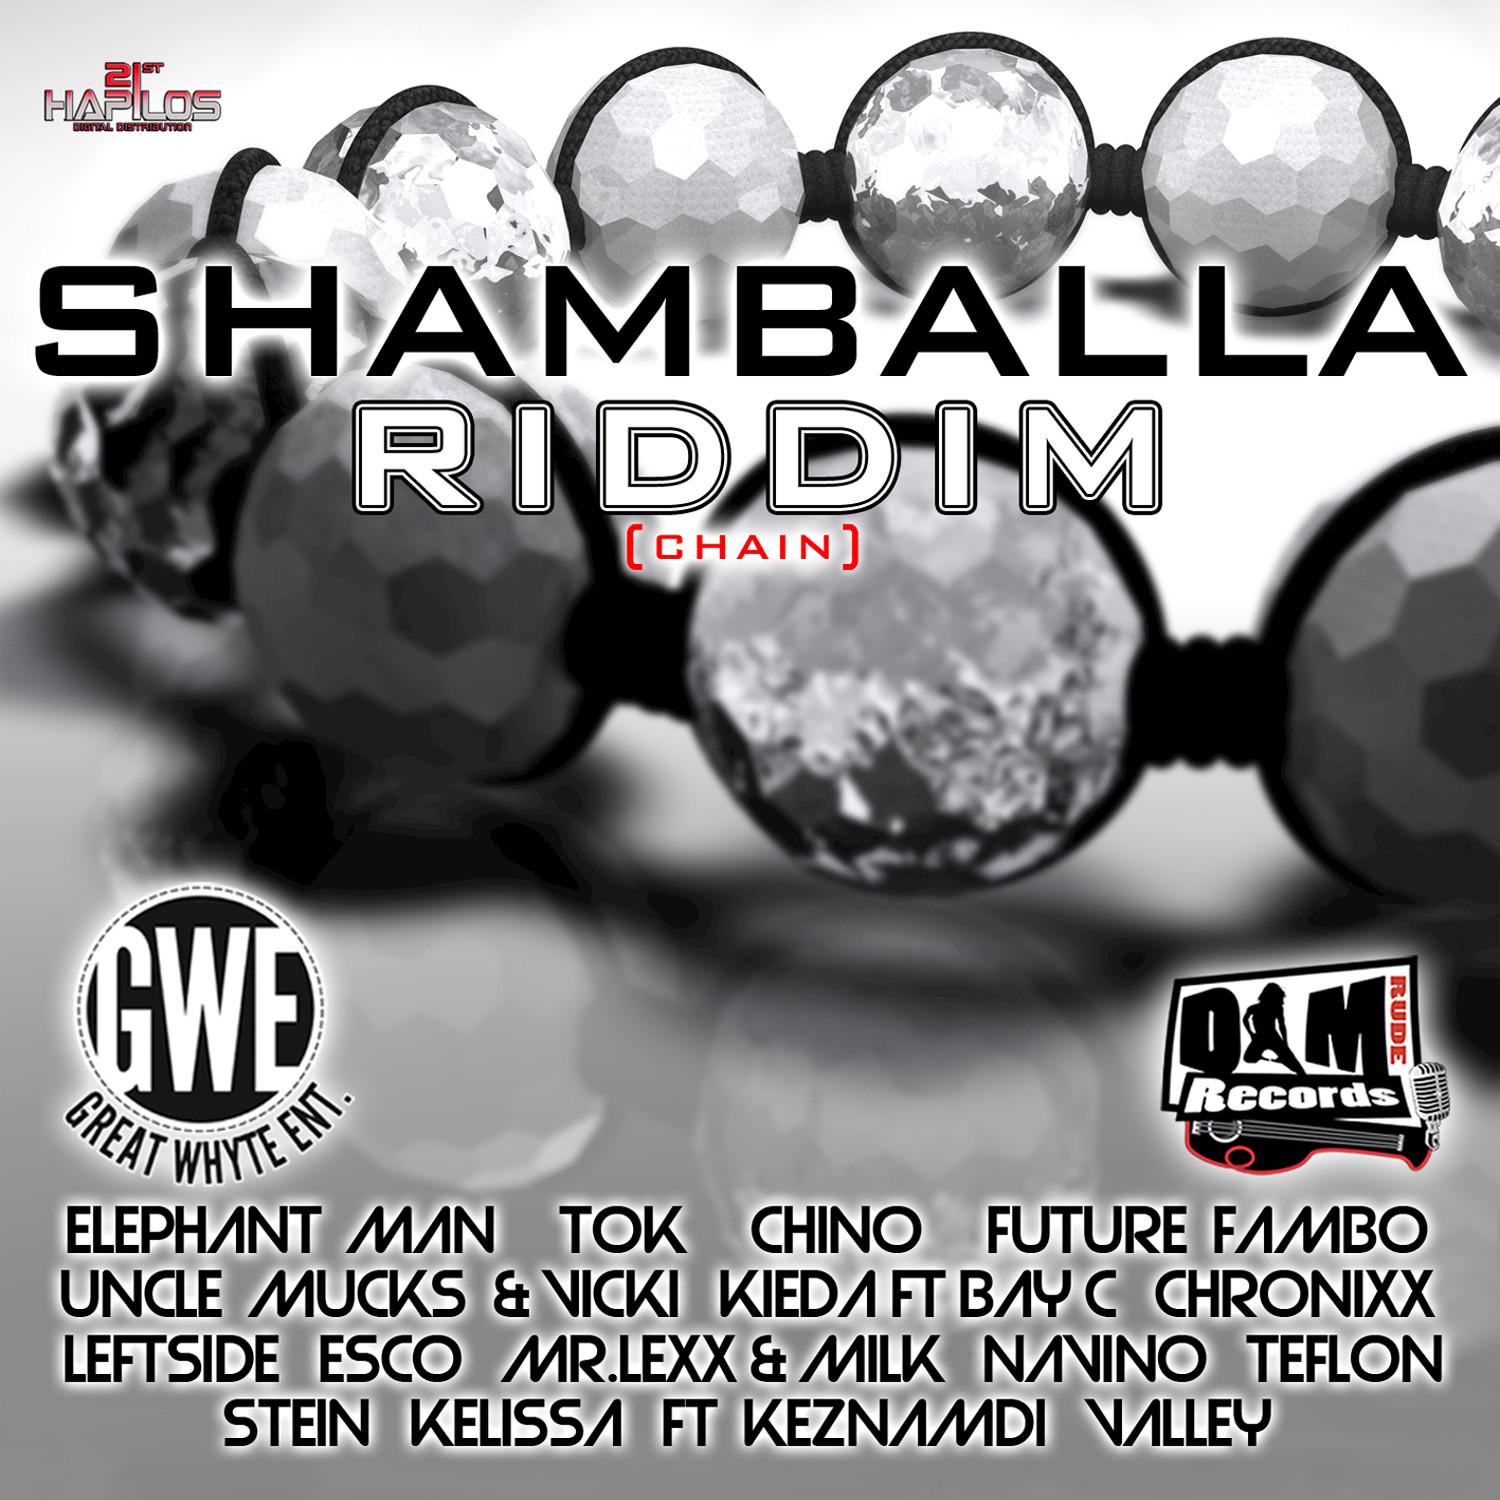 Shamballa Riddim - Chain